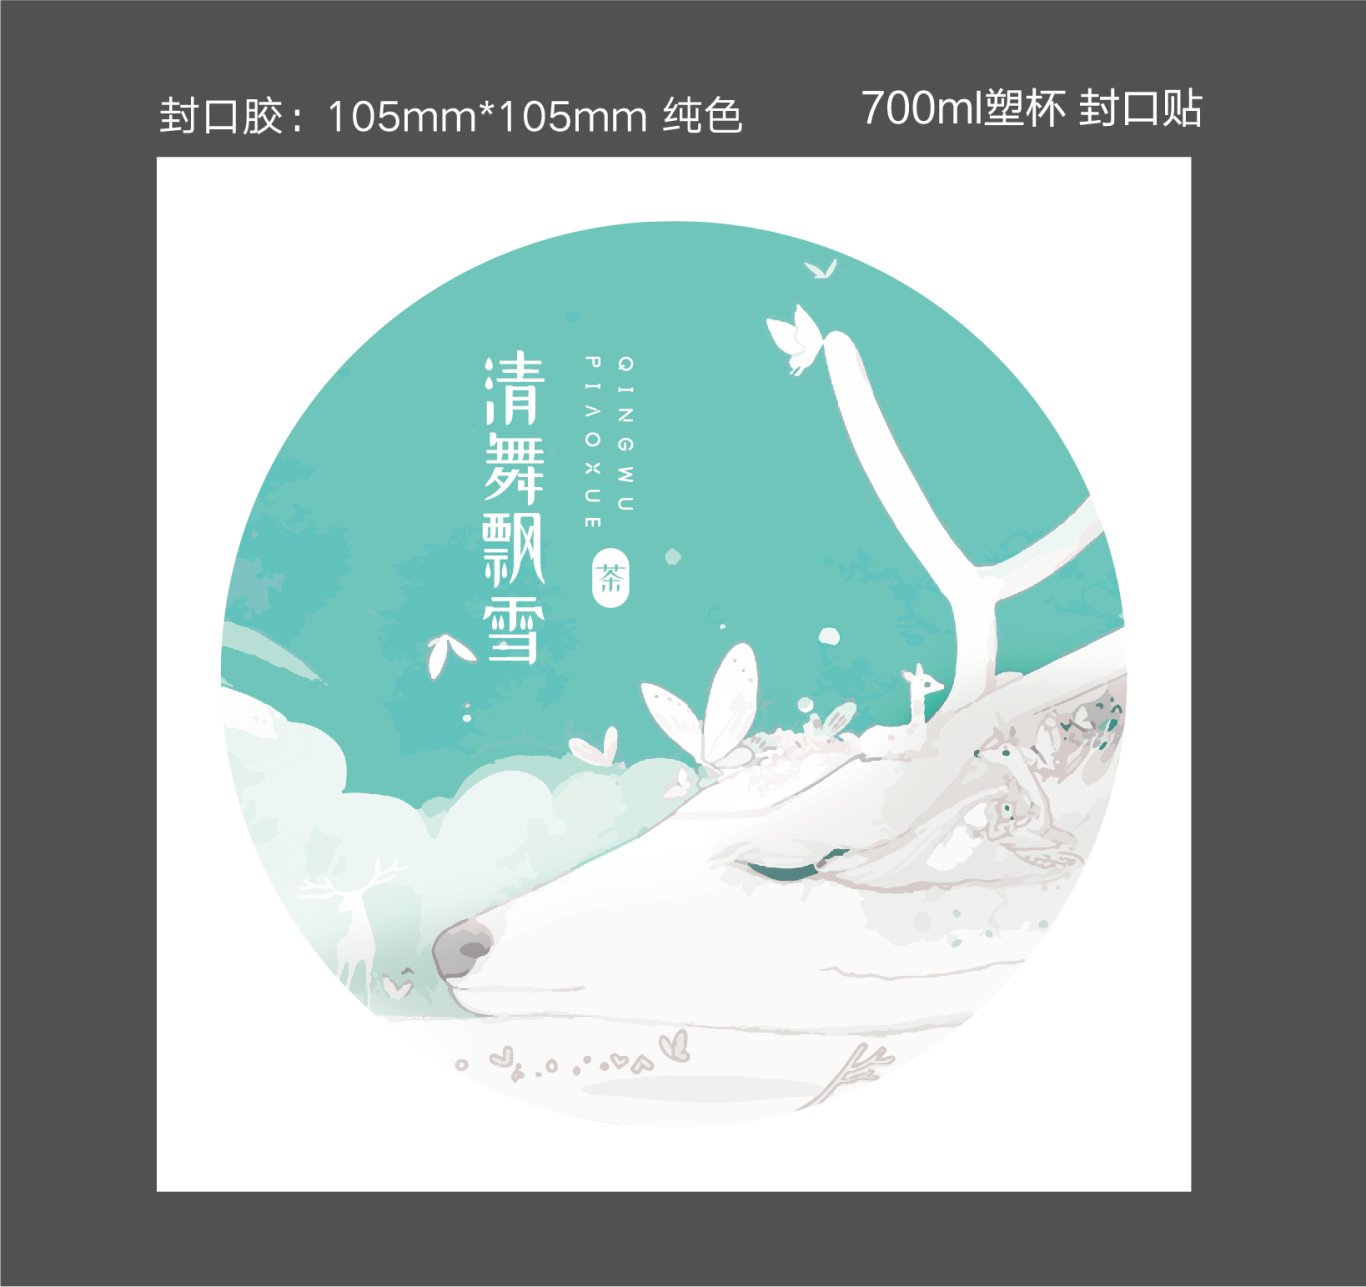 清舞飄雪茶飲 logo設計及吉祥物設計圖12